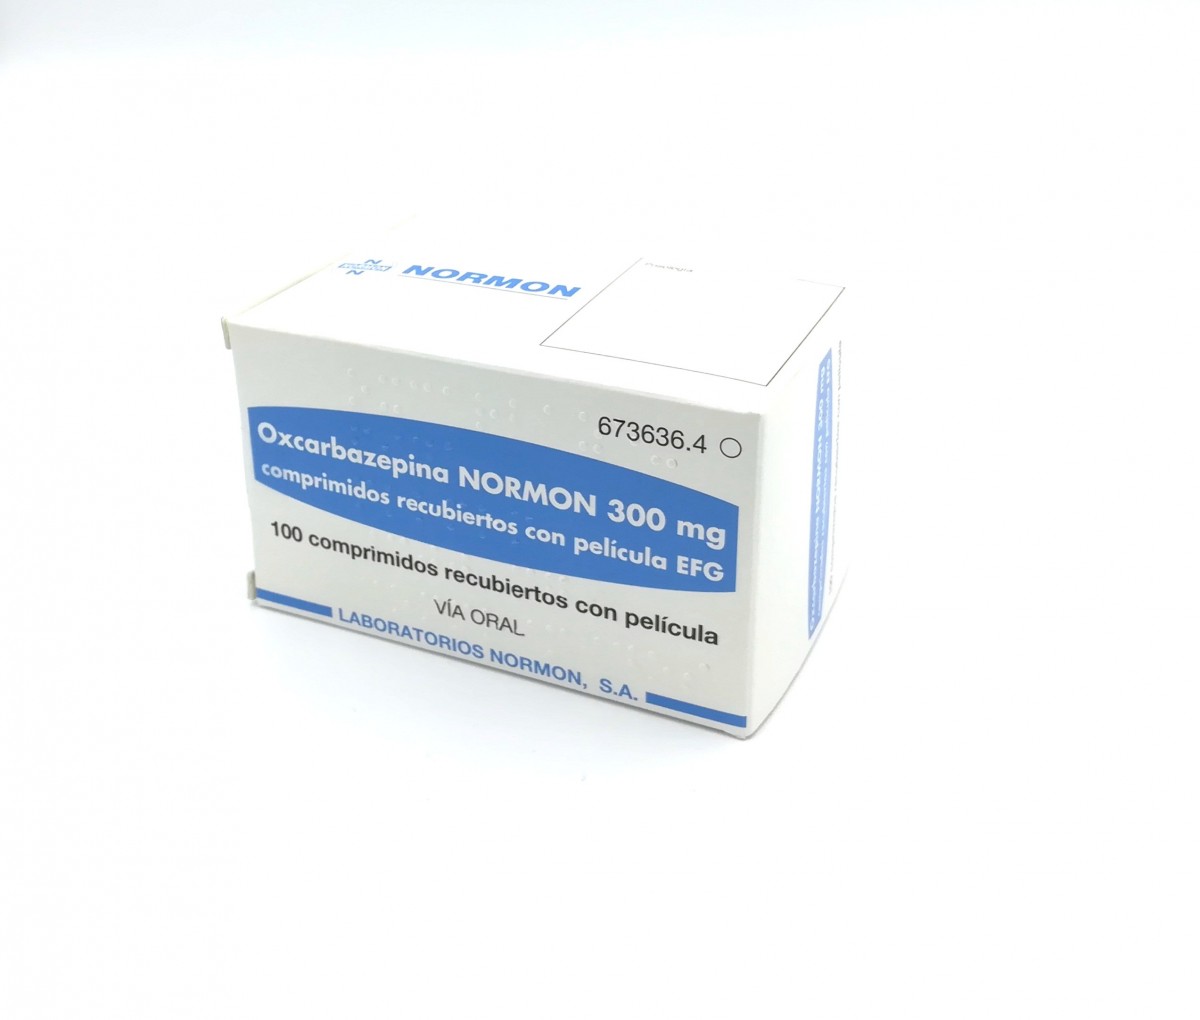 OXCARBAZEPINA NORMON 300 mg COMPRIMIDOS RECUBIERTOS CON PELICULA EFG , 100 comprimidos fotografía del envase.